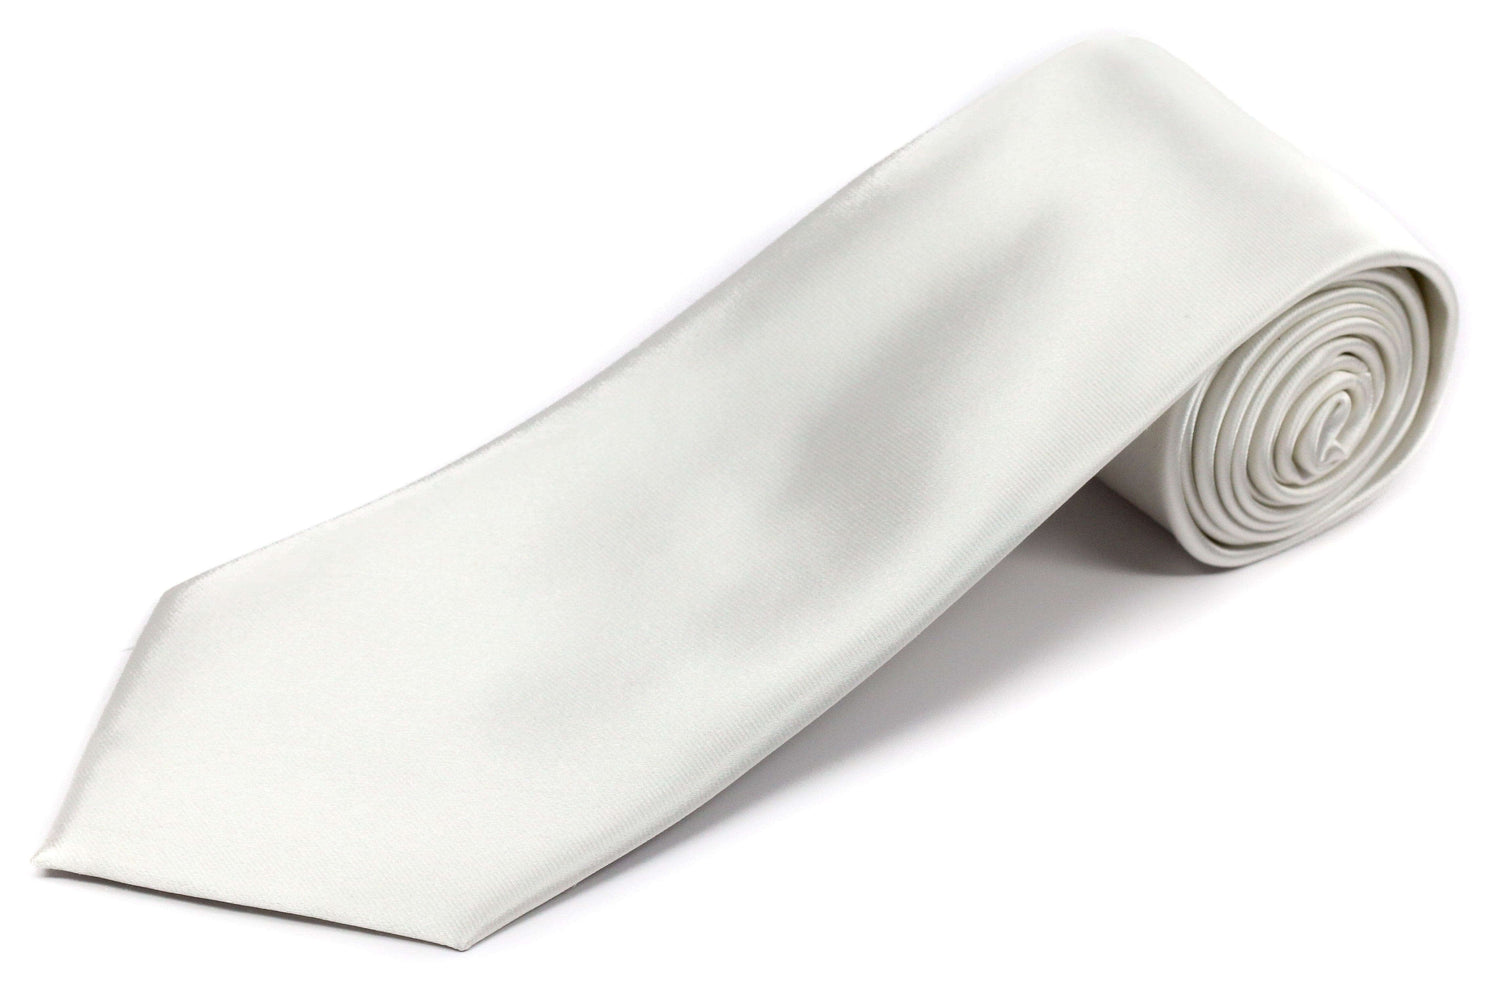 XL Solid White Silk Necktie for Tall Men - Wedding 